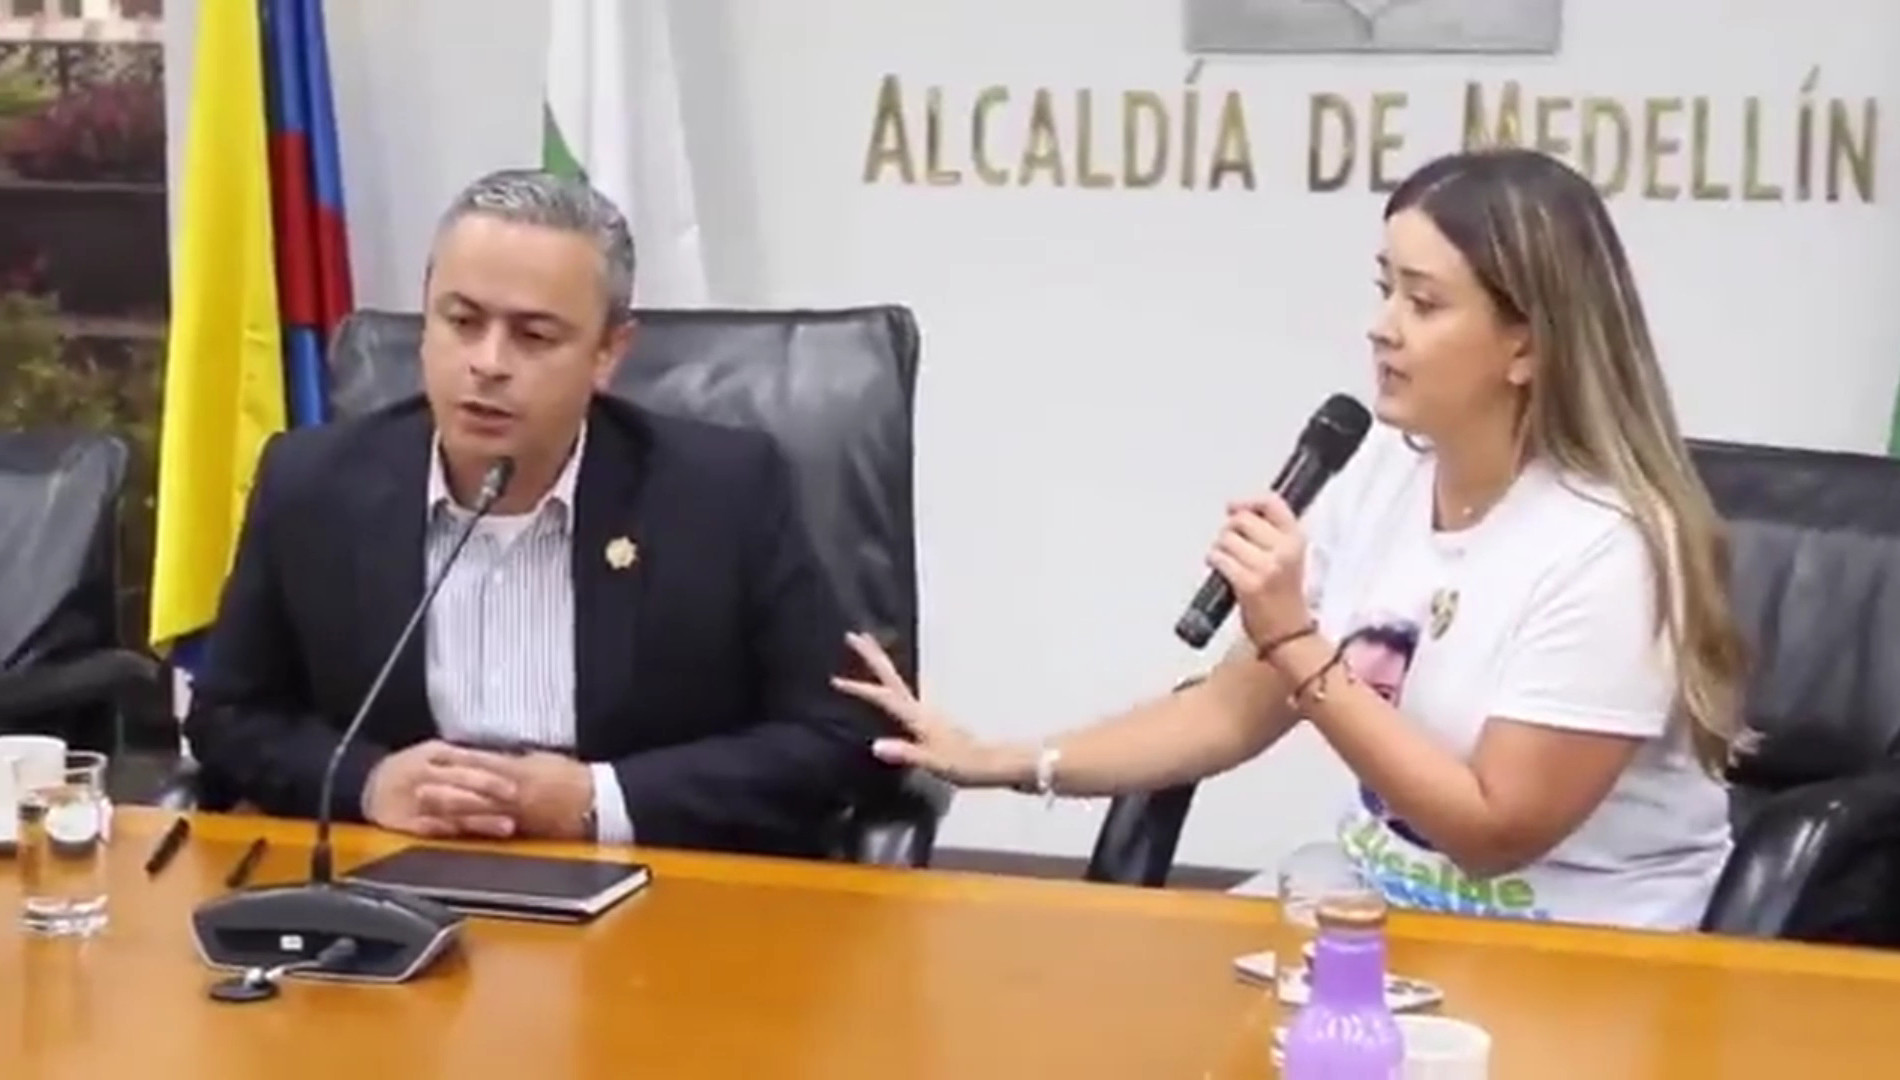 El alcalde (e) de Medellín, Juan Camilo Restrepo Gómez, fue recibido entre críticas por parte del gabinete de Daniel Quintero. Foto: Captura de pantalla